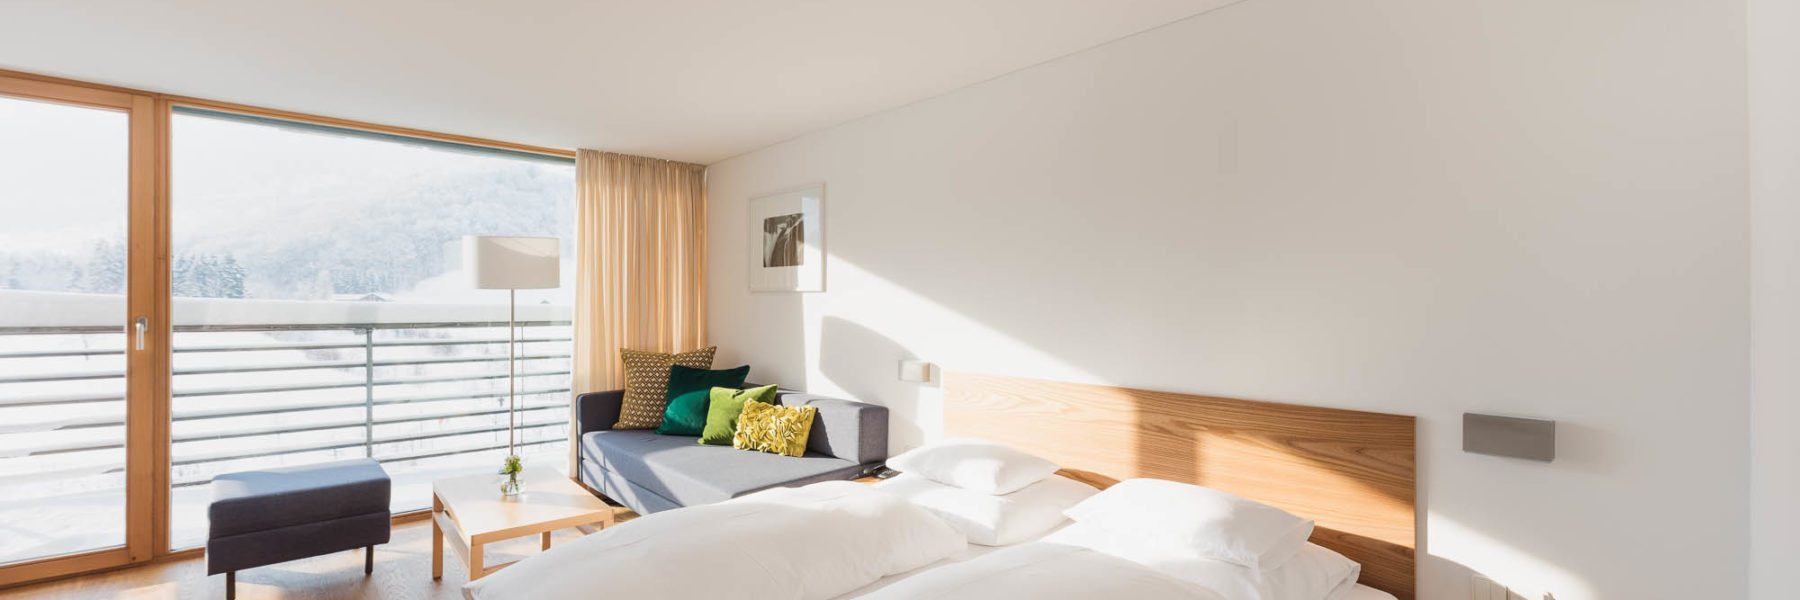 Zimmer mit Balkon hotel krone au das bregenzerwaldhotel